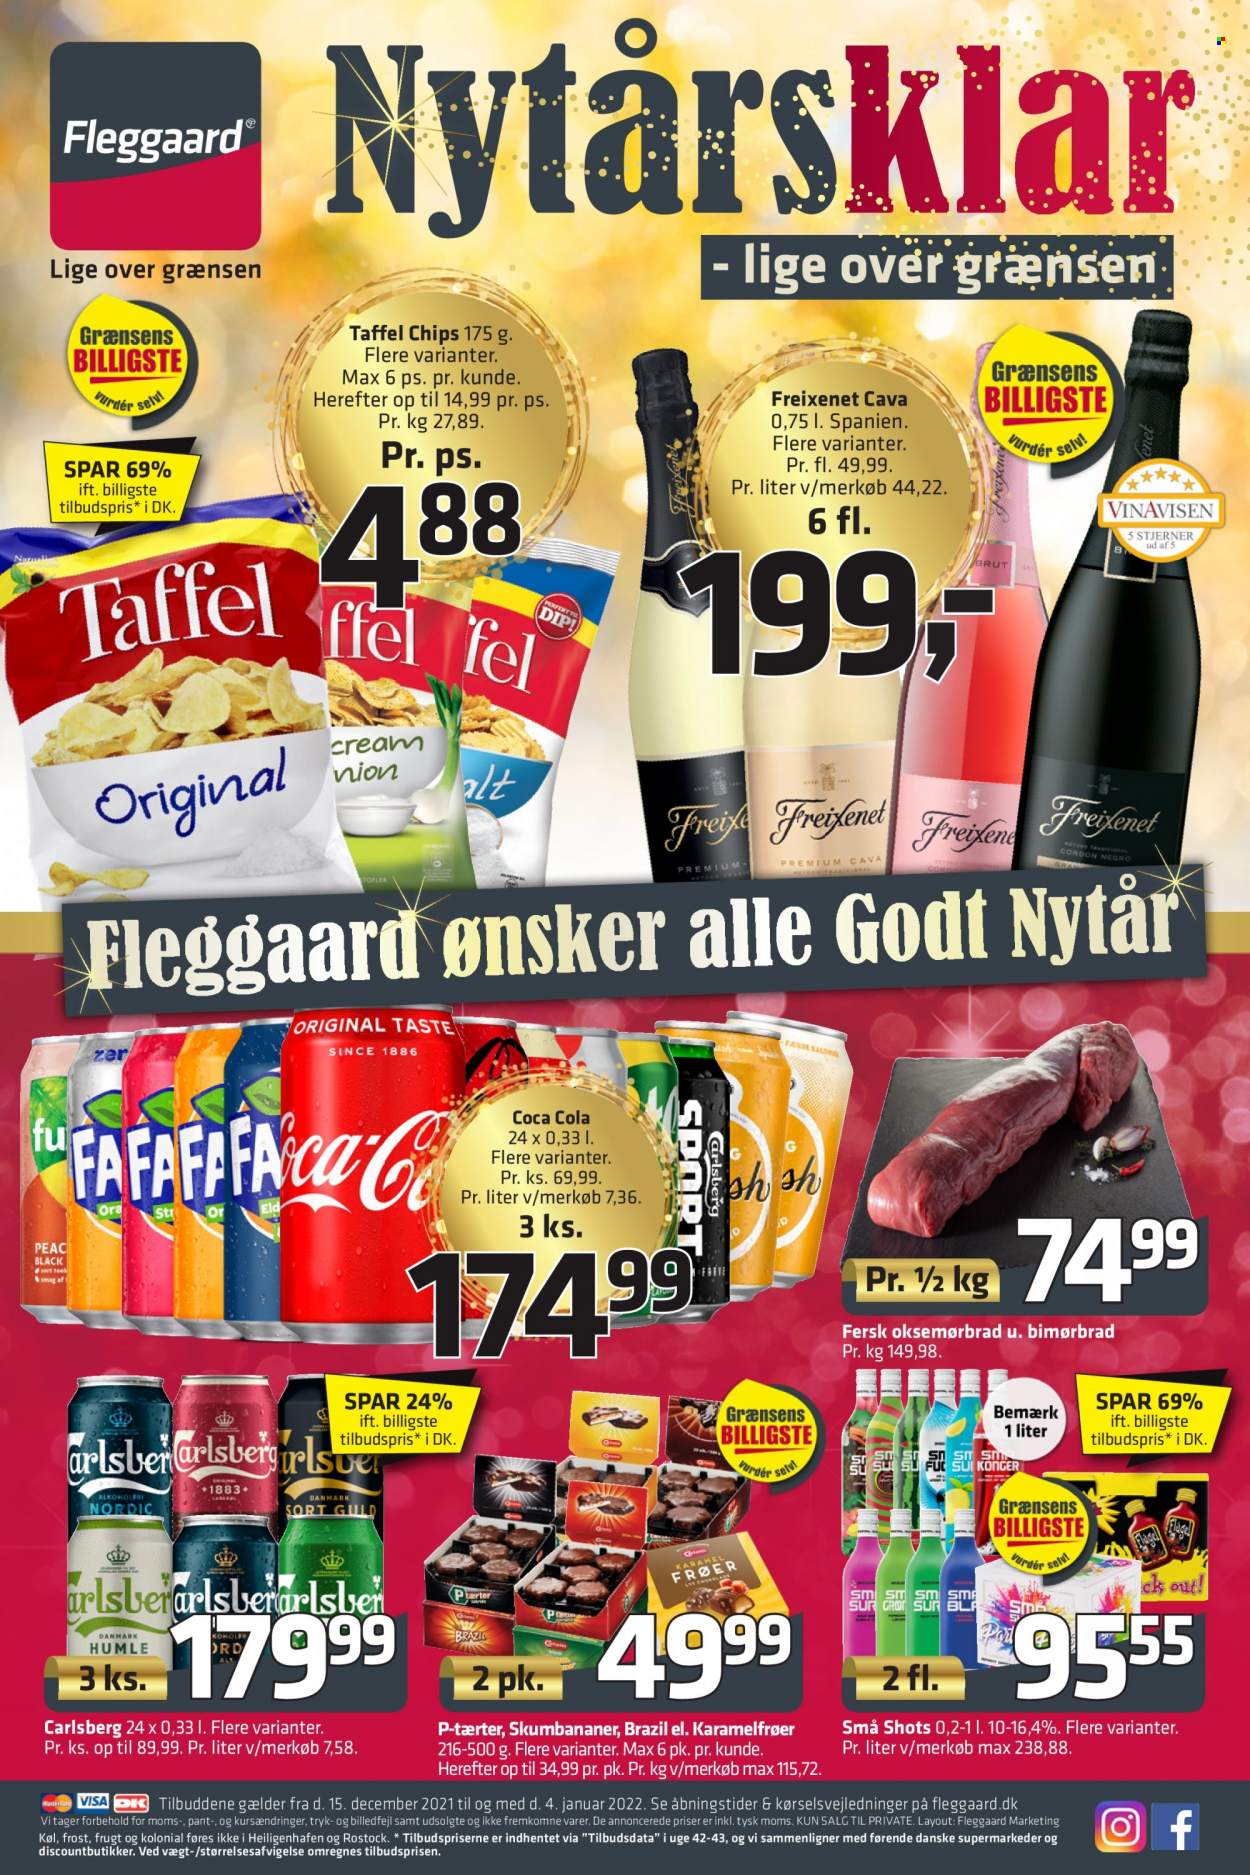 thumbnail - Fleggaard tilbud  - 15.12.2021 - 4.1.2022 - tilbudsprodukter - oksemørbrad, oksekød, Carlsberg, øl, chips, Coca-Cola. Side 1.